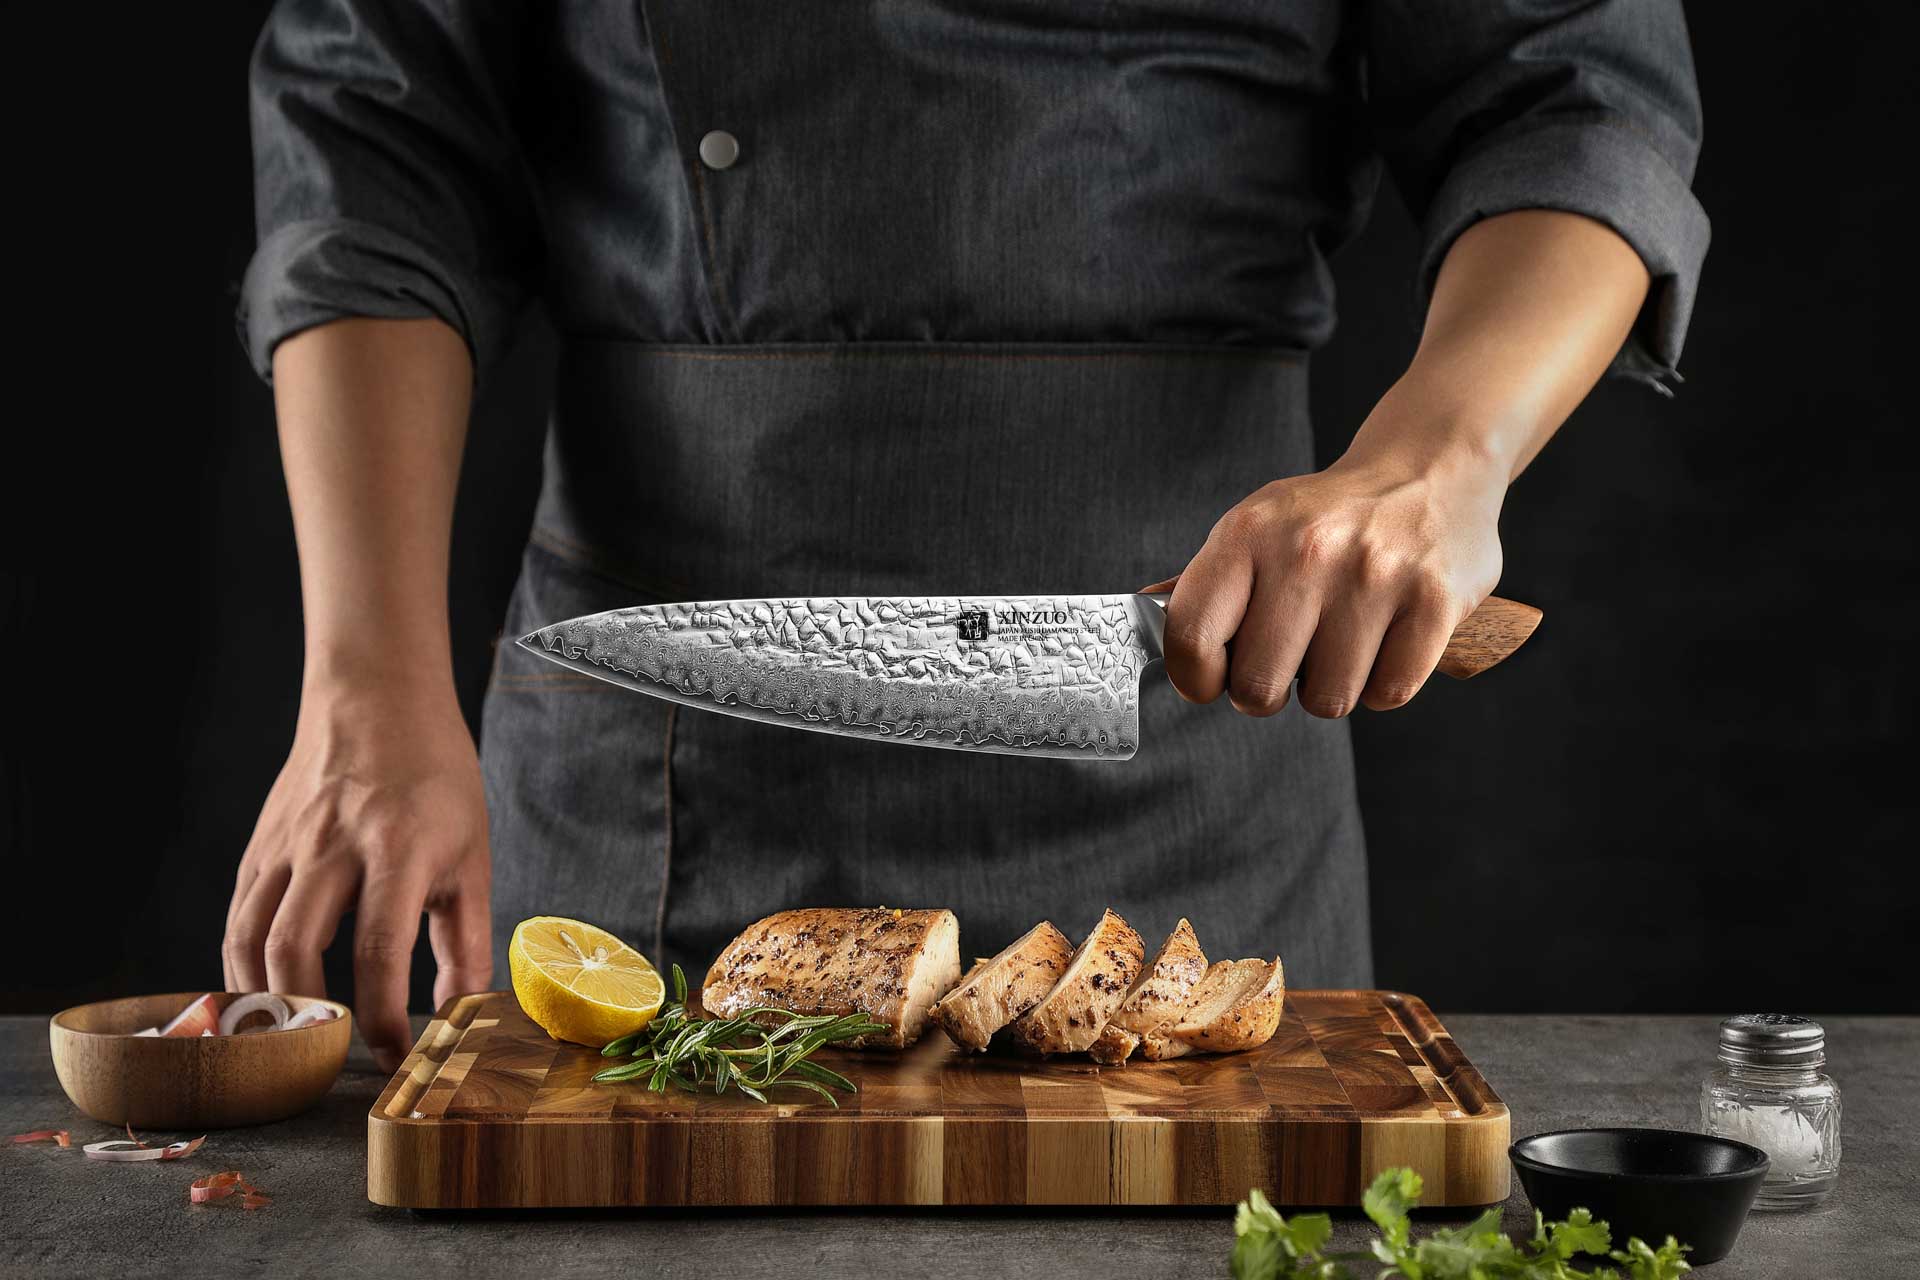 Šéfkuchařský nůž XinZuo B46W - ukázka držení v ruce